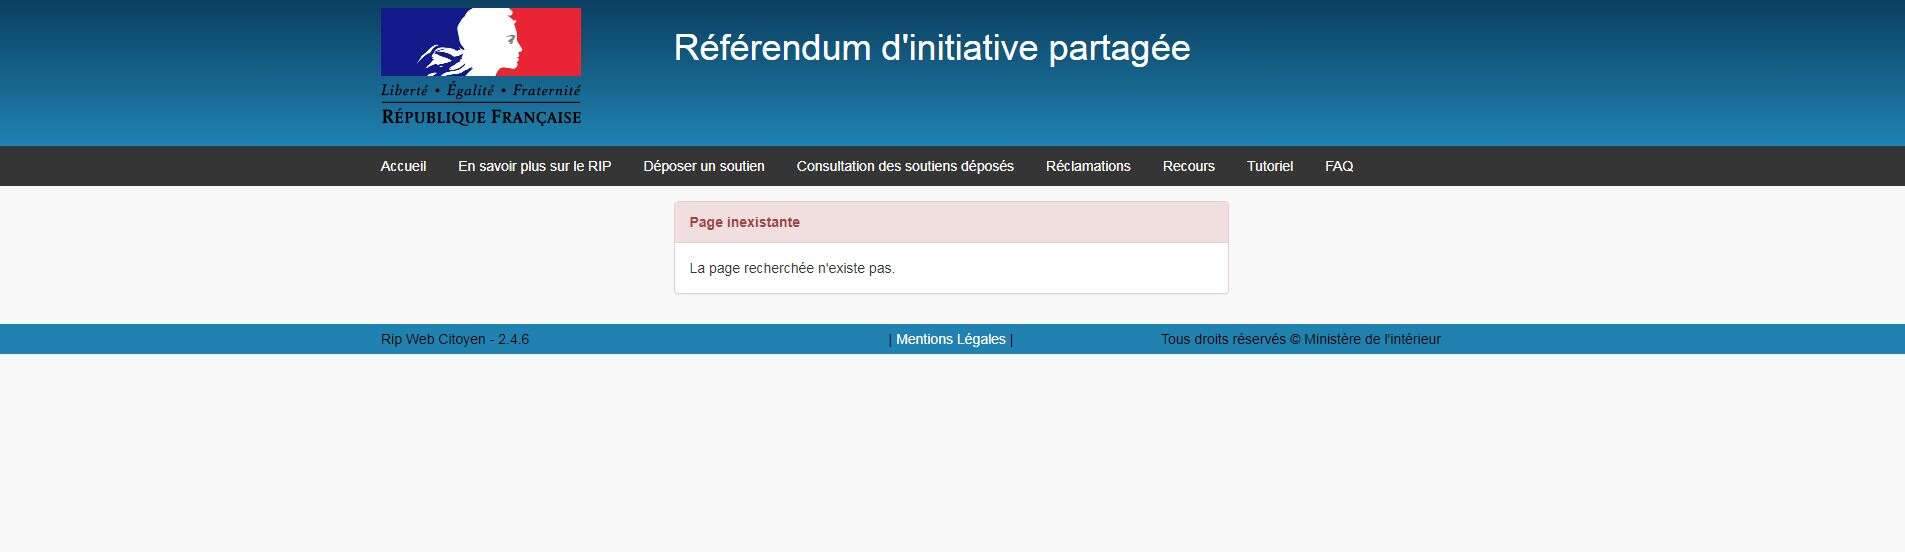 La page permettant de comptabiliser facilement les soutiens au référendum, bloquée par le gouvernement.